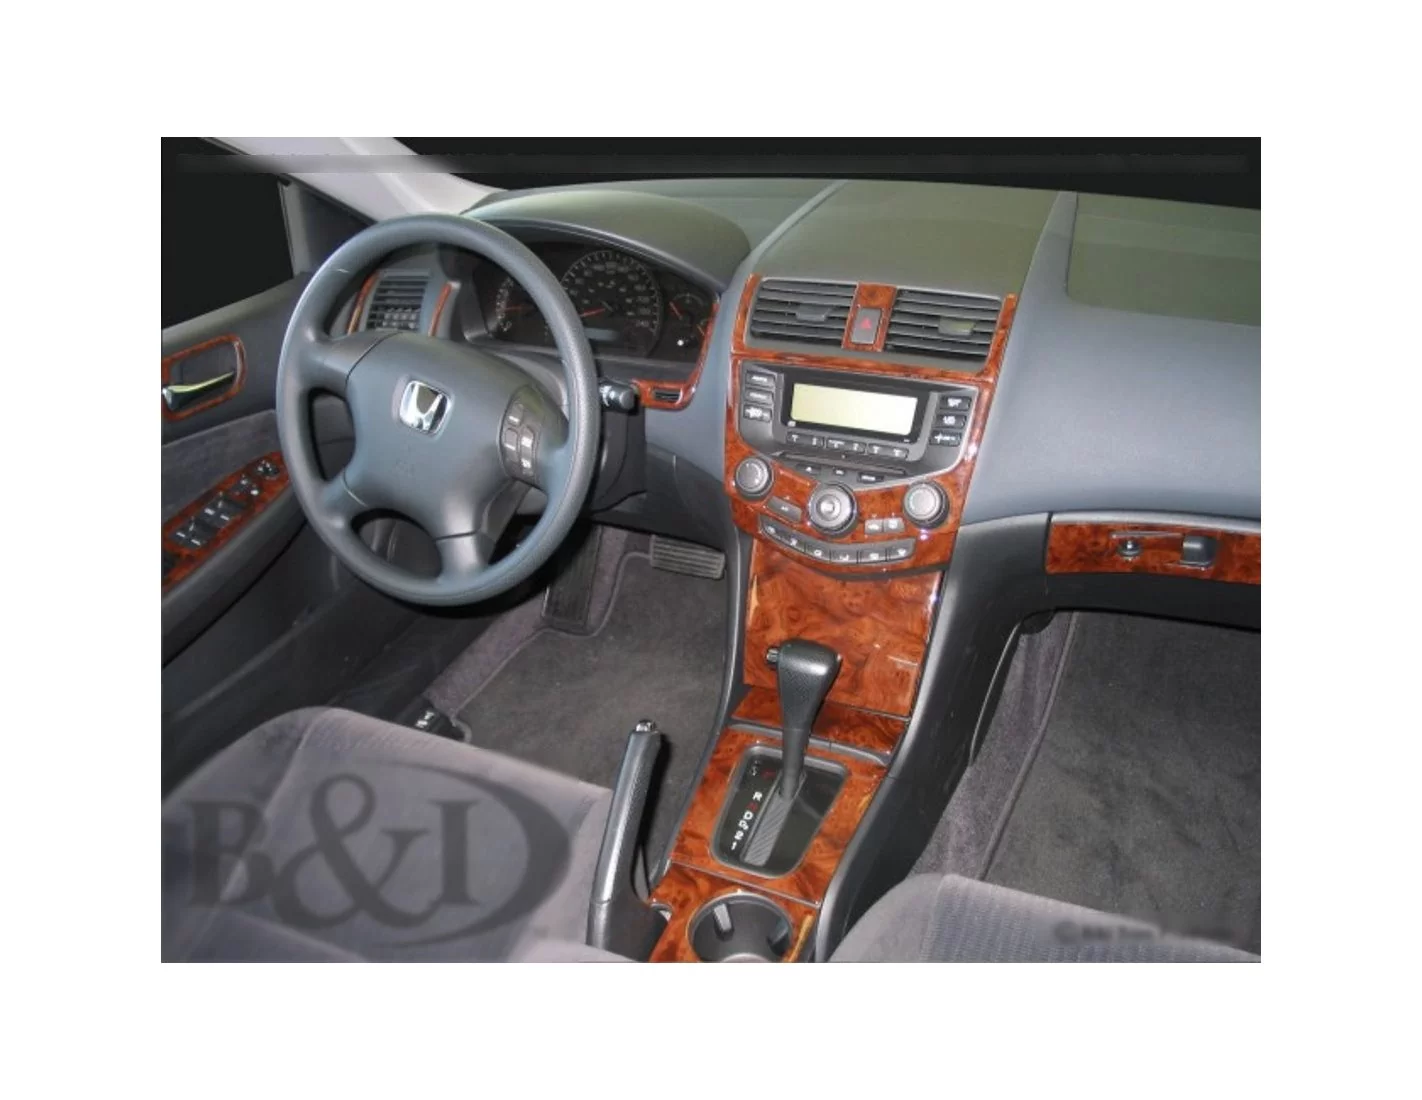 Honda Accord 2003-2007 Ensemble Complet, Avec NAVI system, 4 Des portes BD Kit la décoration du tableau de bord - 1 - habillage 